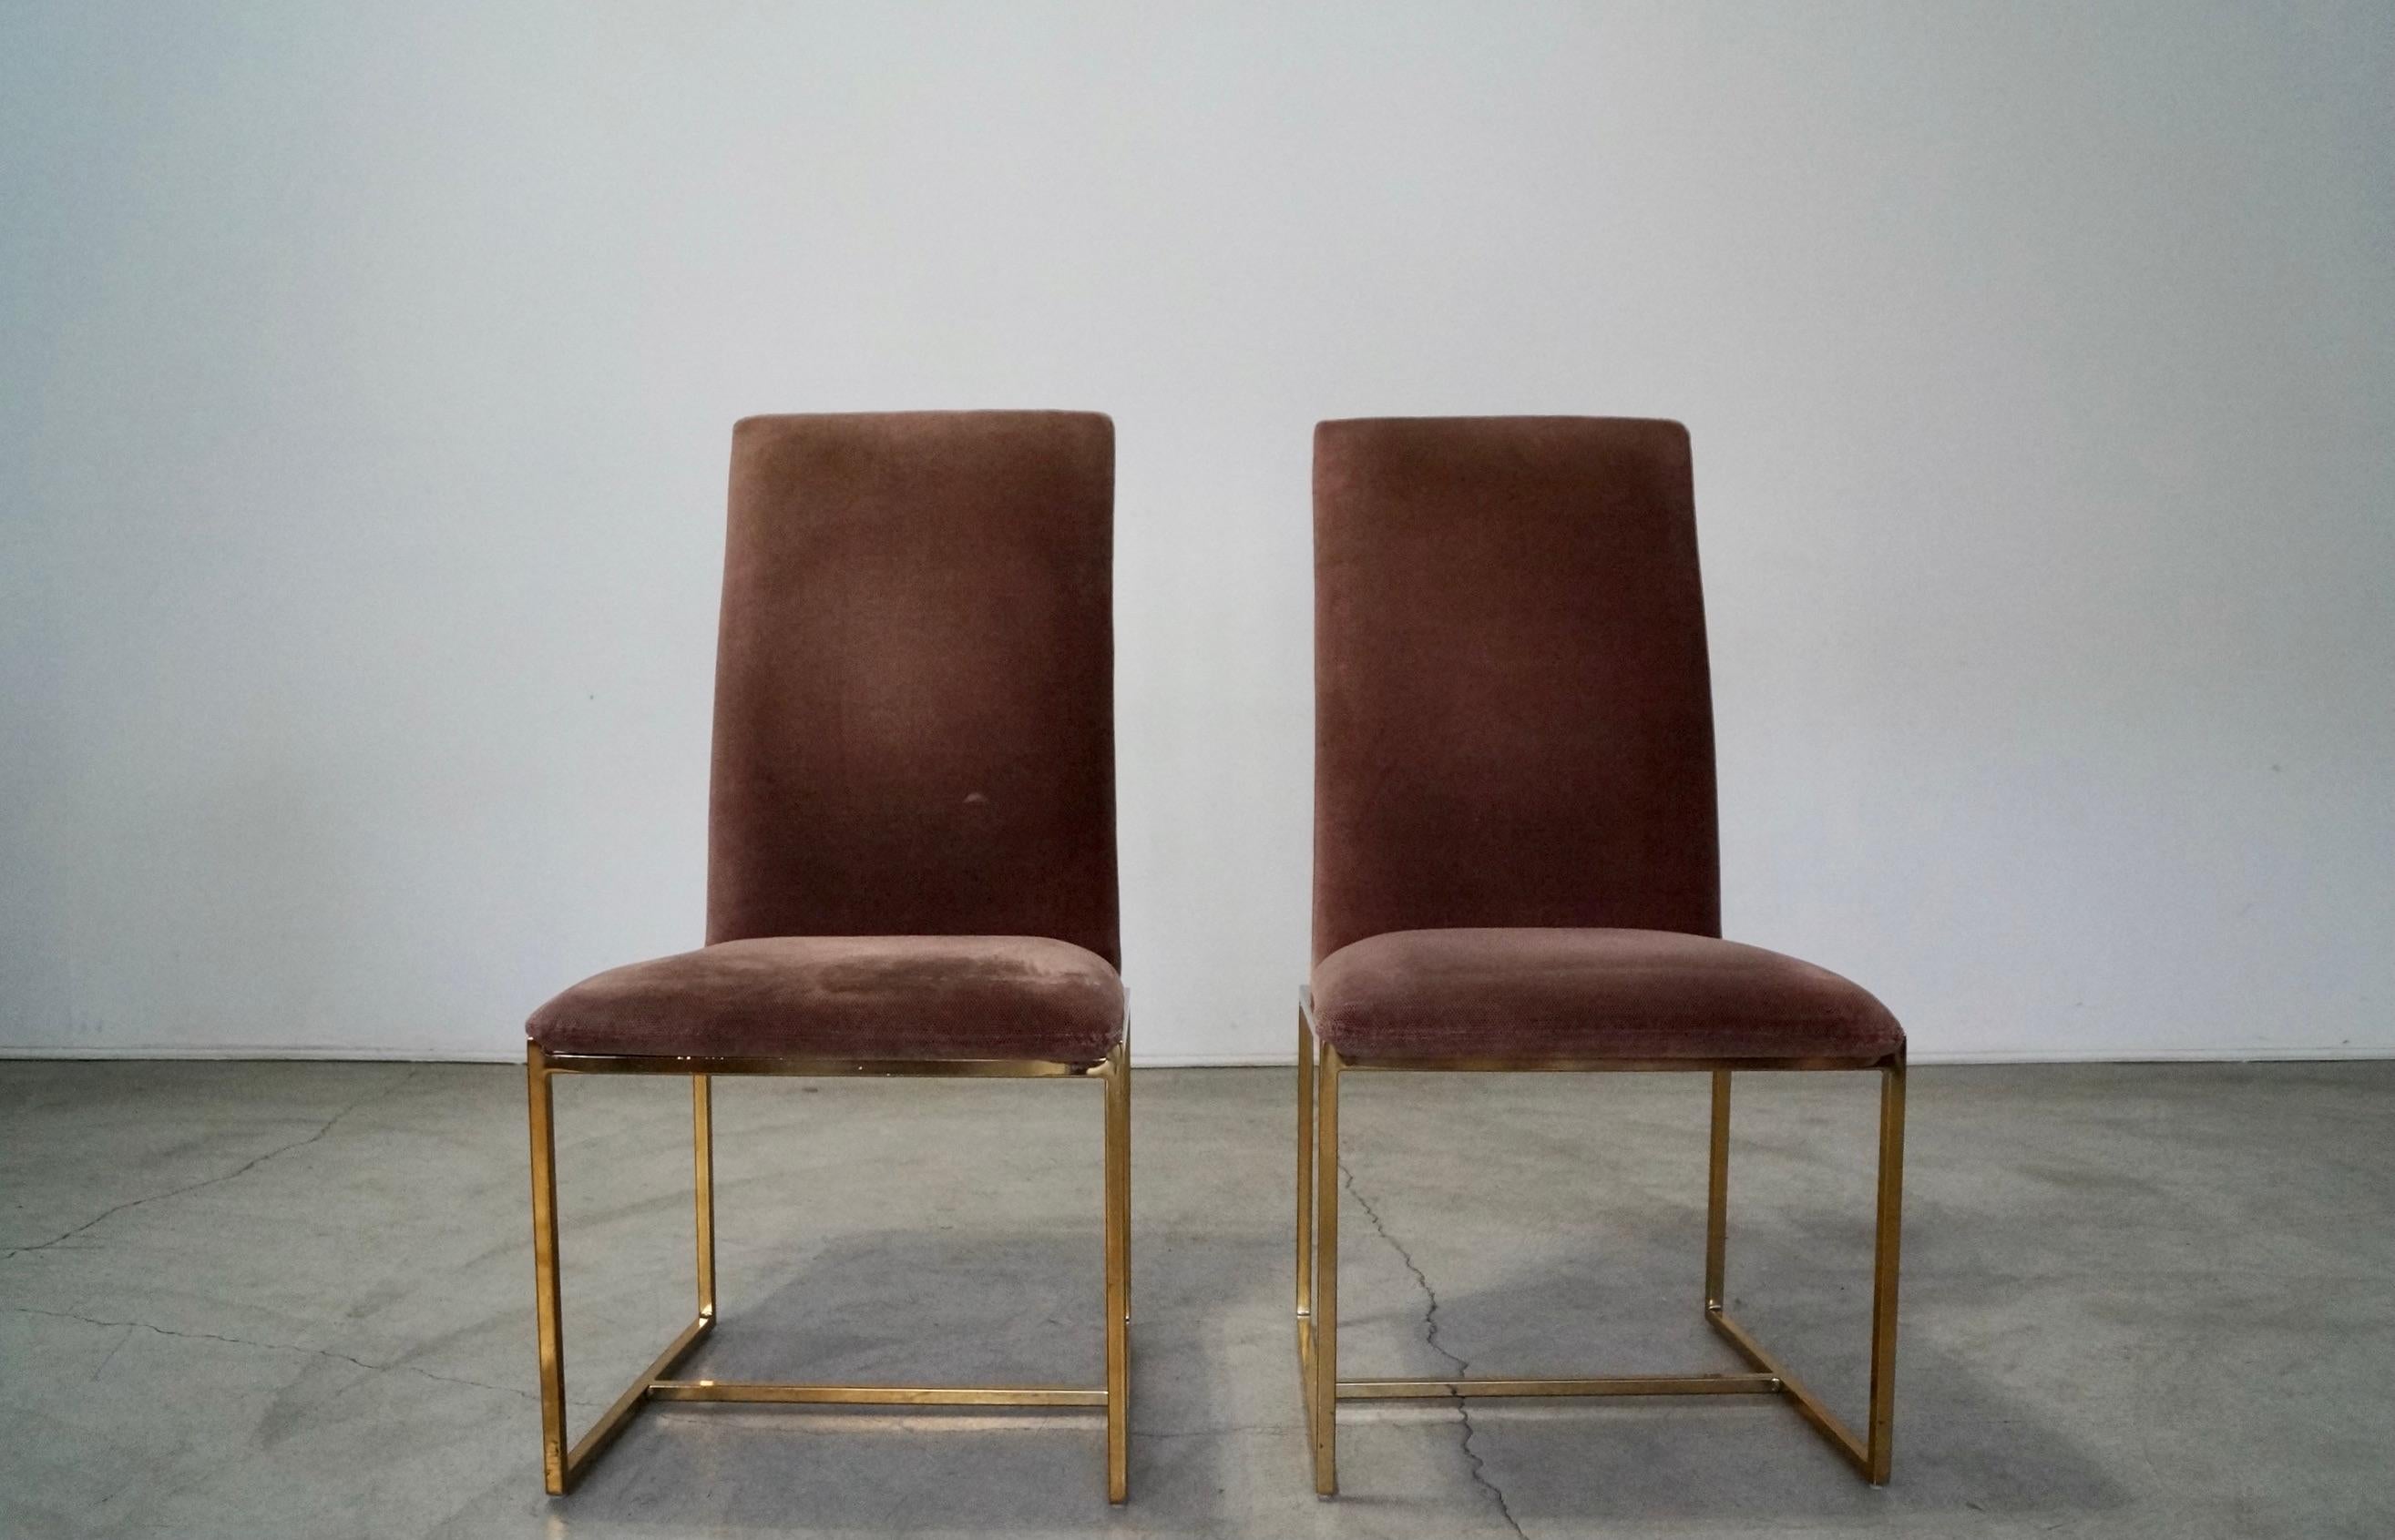 Vintage Paar 1970er Jahre Mid-Century Modern Esszimmerstühle zu verkaufen. Sie haben einen Sockel aus Messing und sind mit dem originalen, samtartigen Stoff in dunklem Mauve bezogen. Sehr gut gemachte Stühle. Der Stoff ist in gutem Vintage-Zustand,